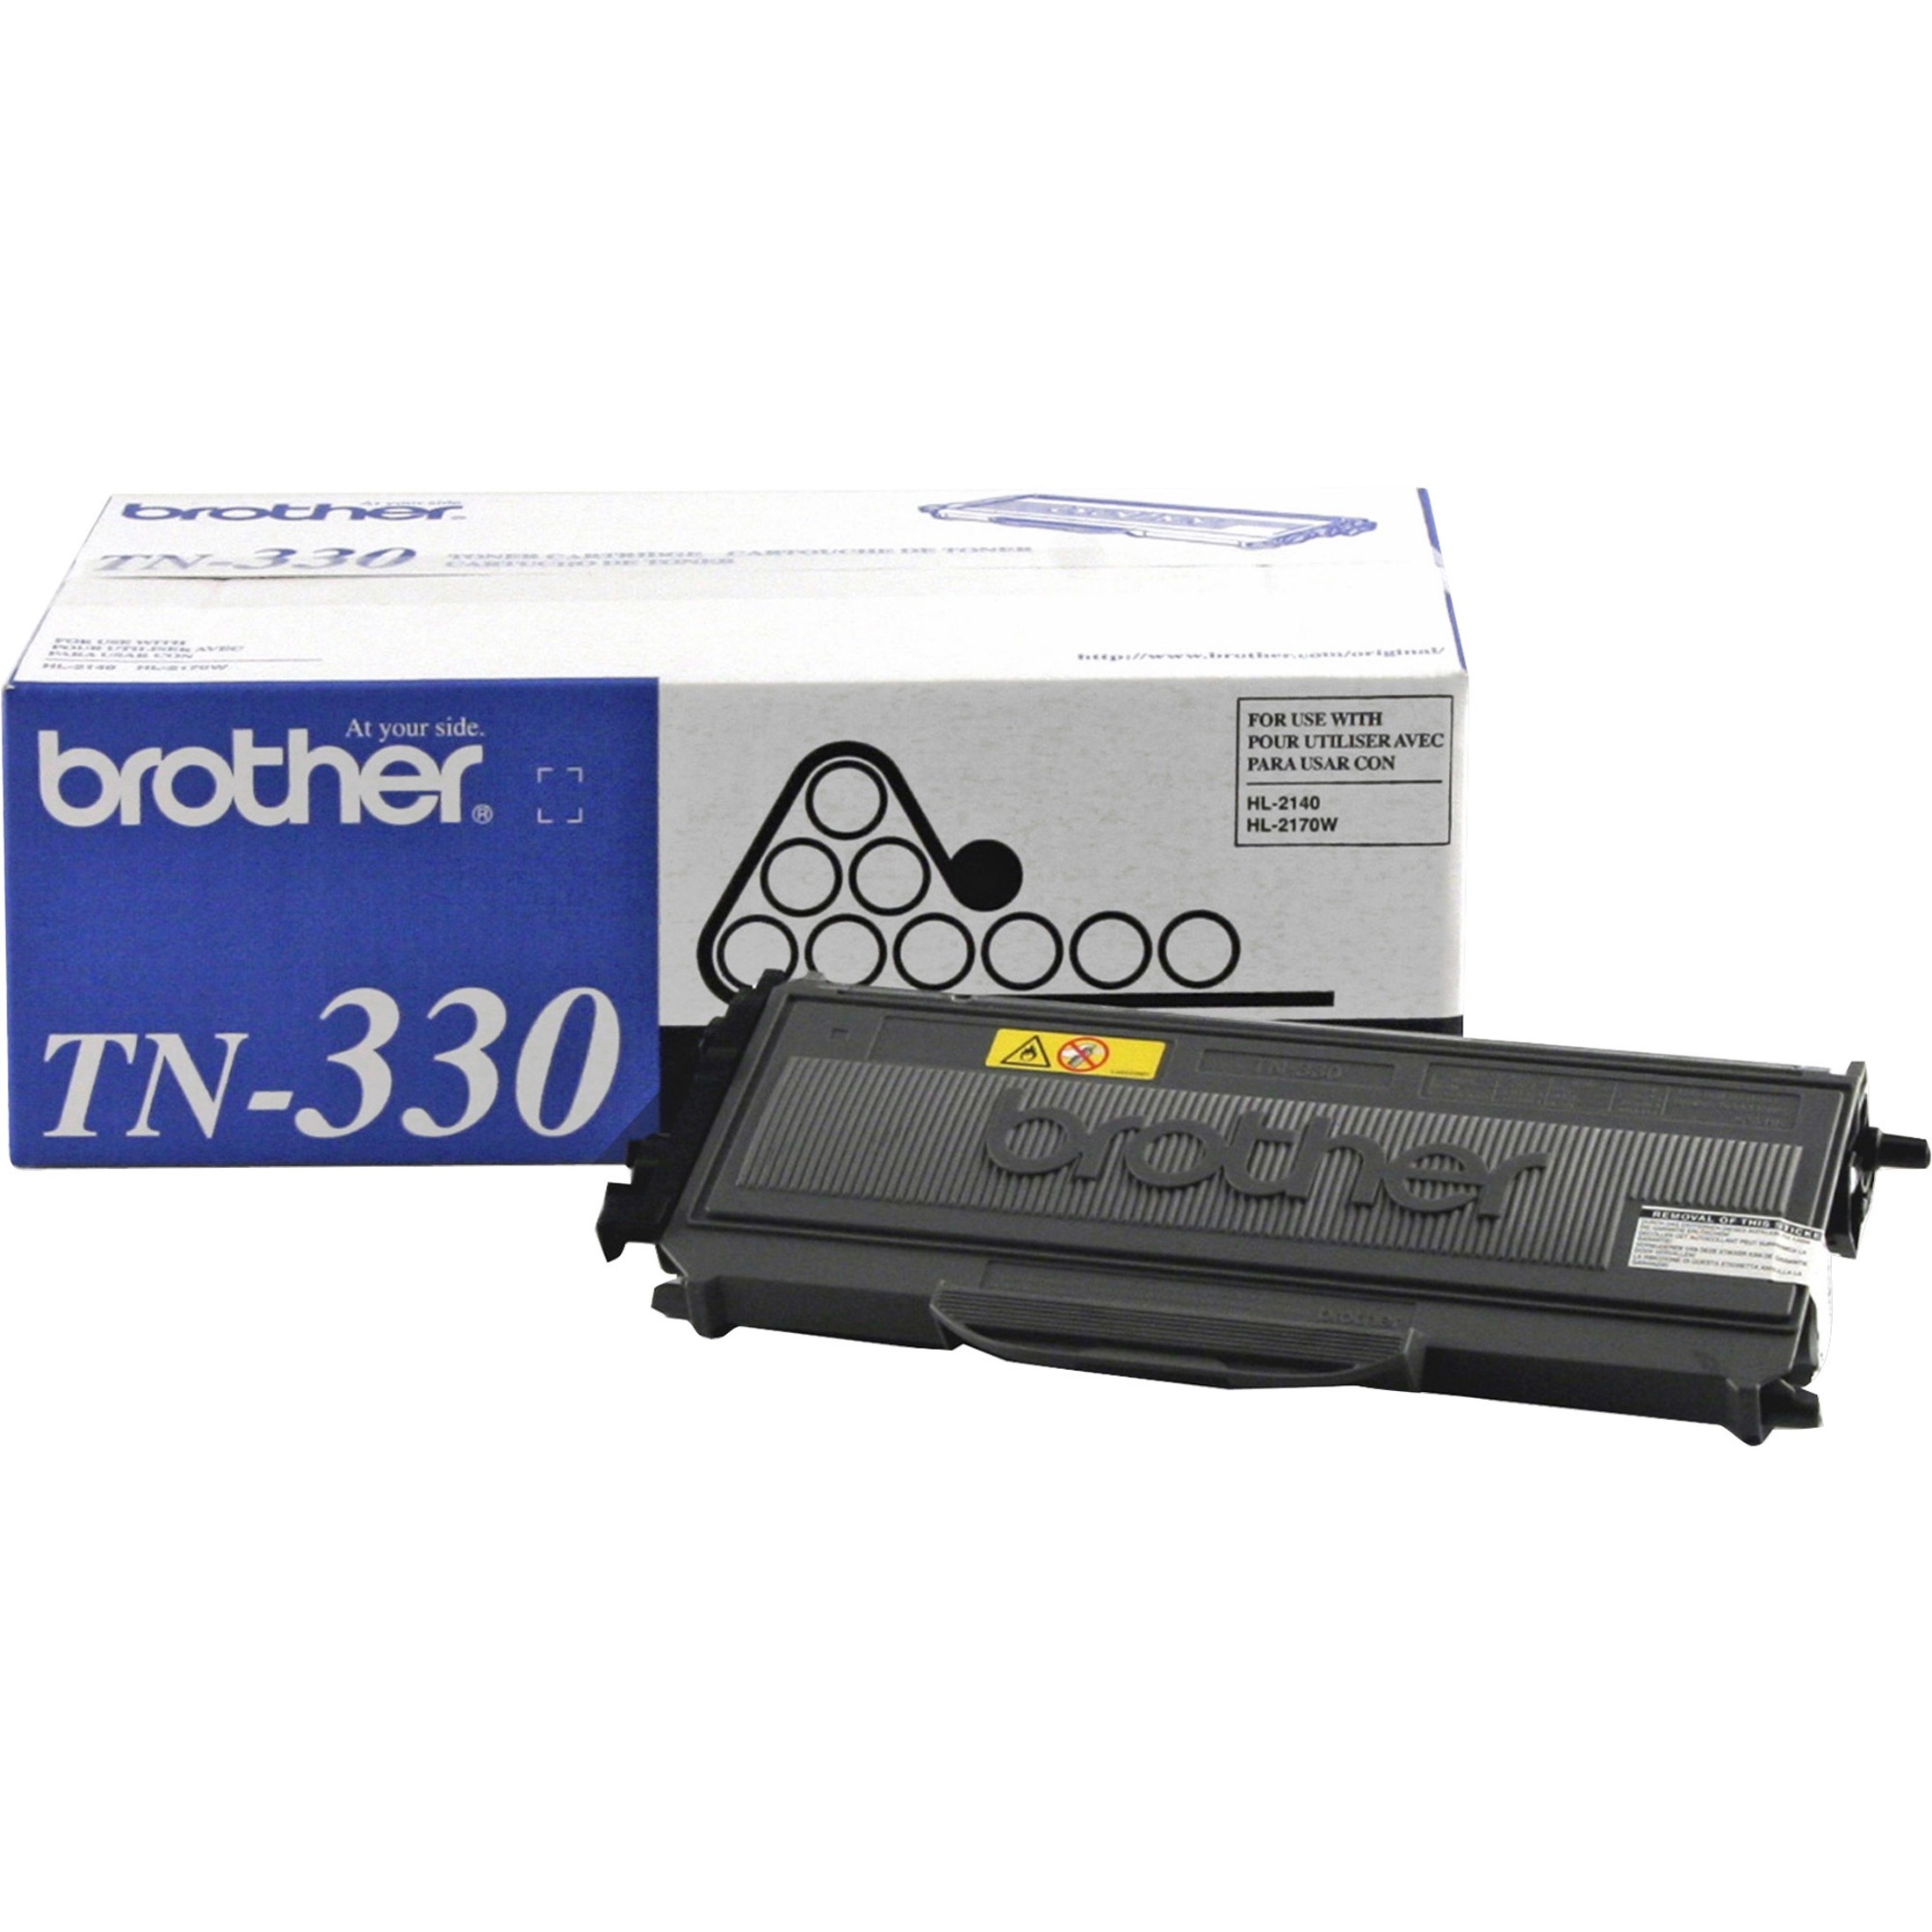 Elite Image Remanufactured Toner Cartridge - Alternative for Brother TN330 - Black - image 1 of 2